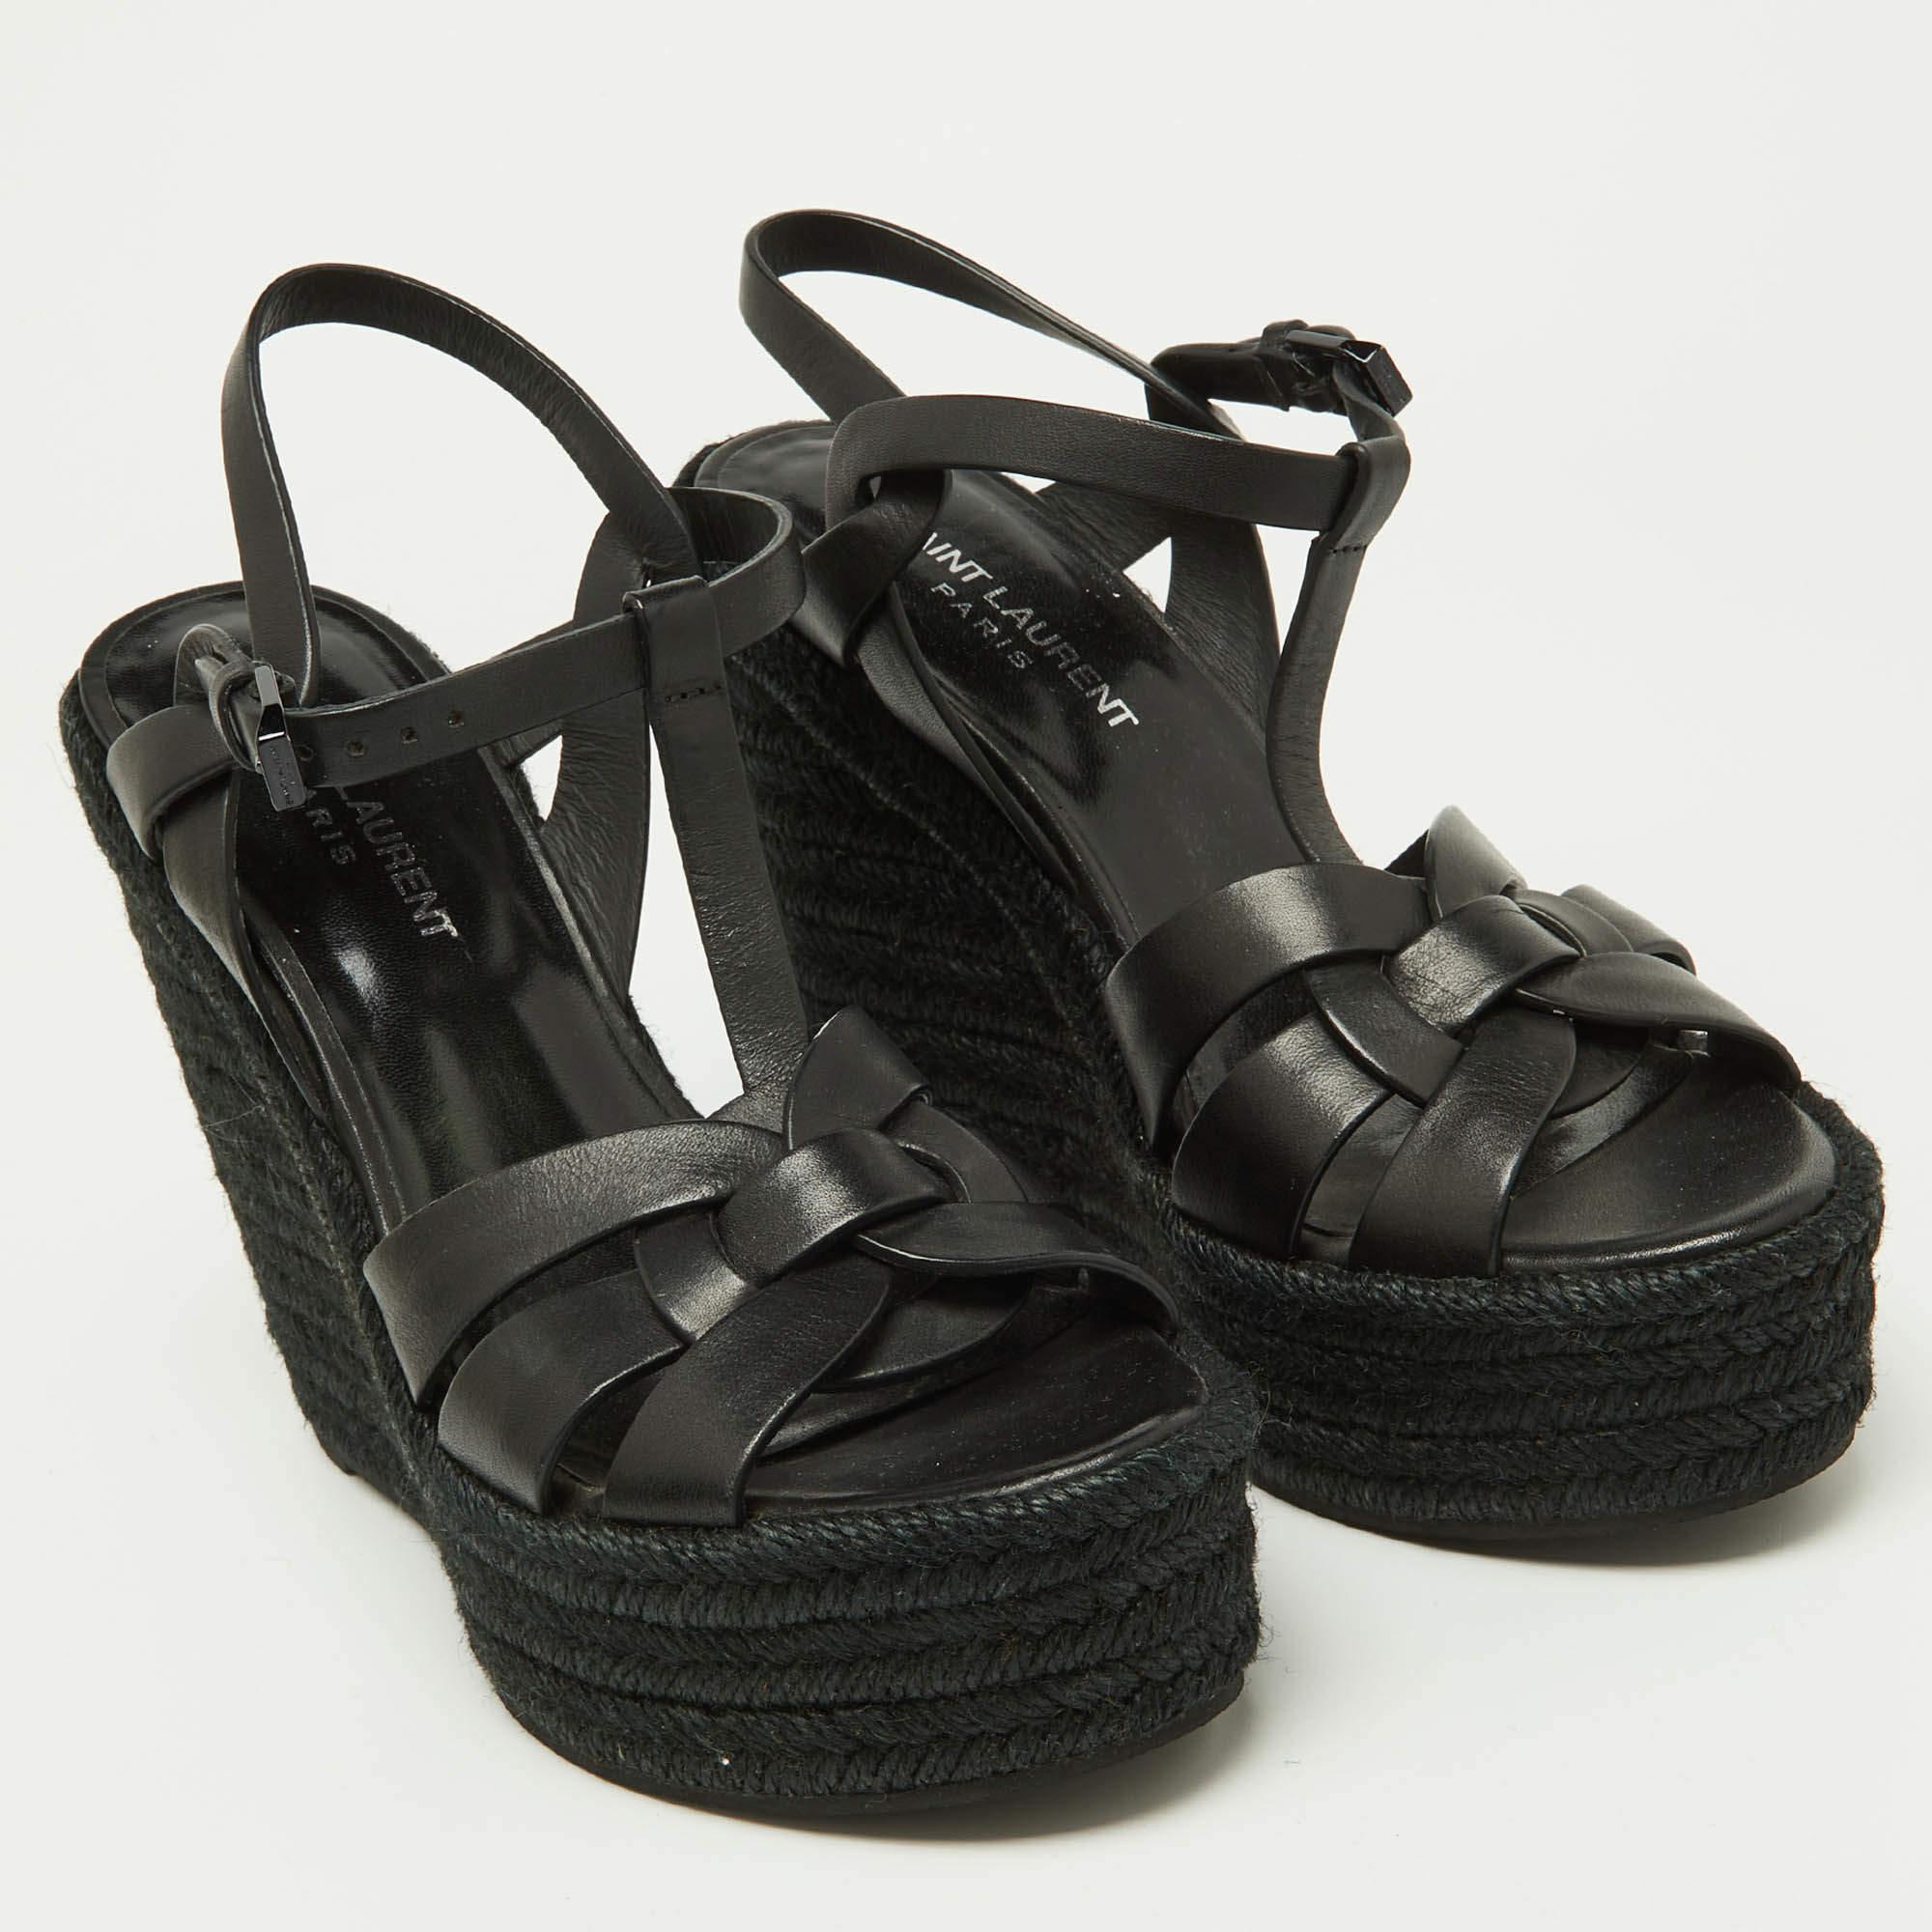 Saint Laurent Black Leather Tribute Espadrilles Wedge Sandals Size 38 3